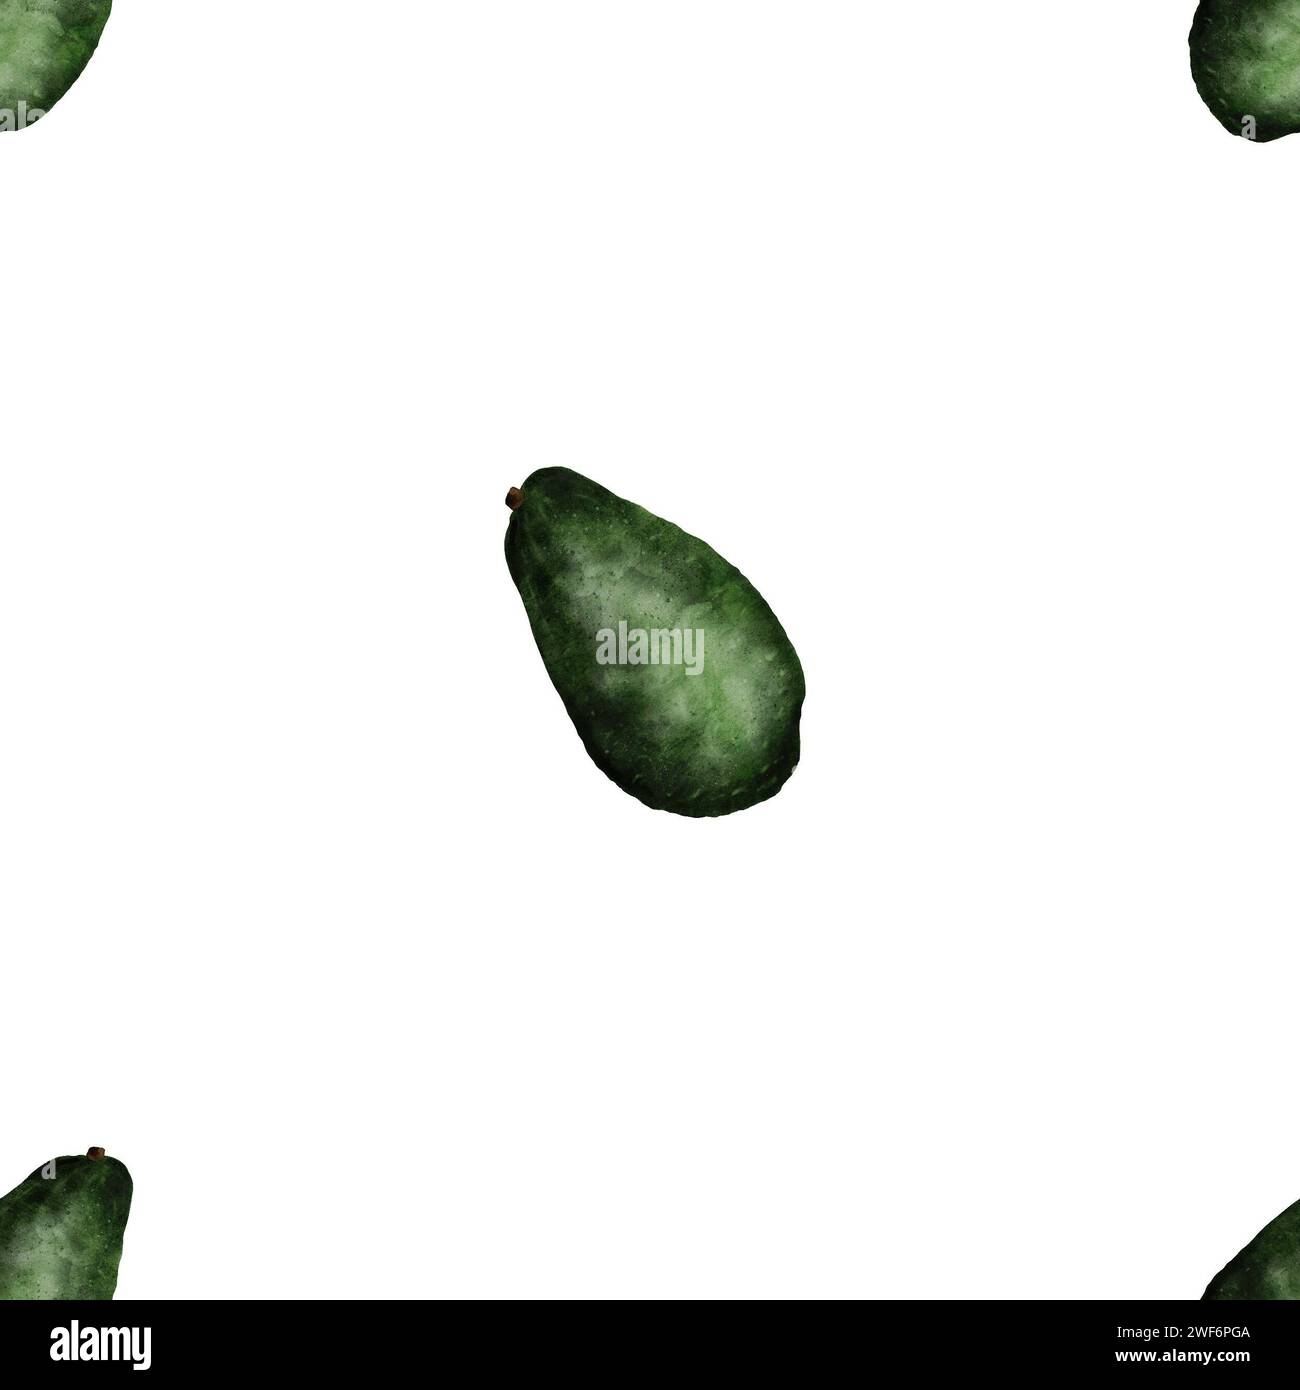 Fruits frais mûrs vert avocat dans un motif sans couture sur un fond blanc. Ripe Persea americana dans une illustration succulente à l'aquarelle. Fruit été Banque D'Images